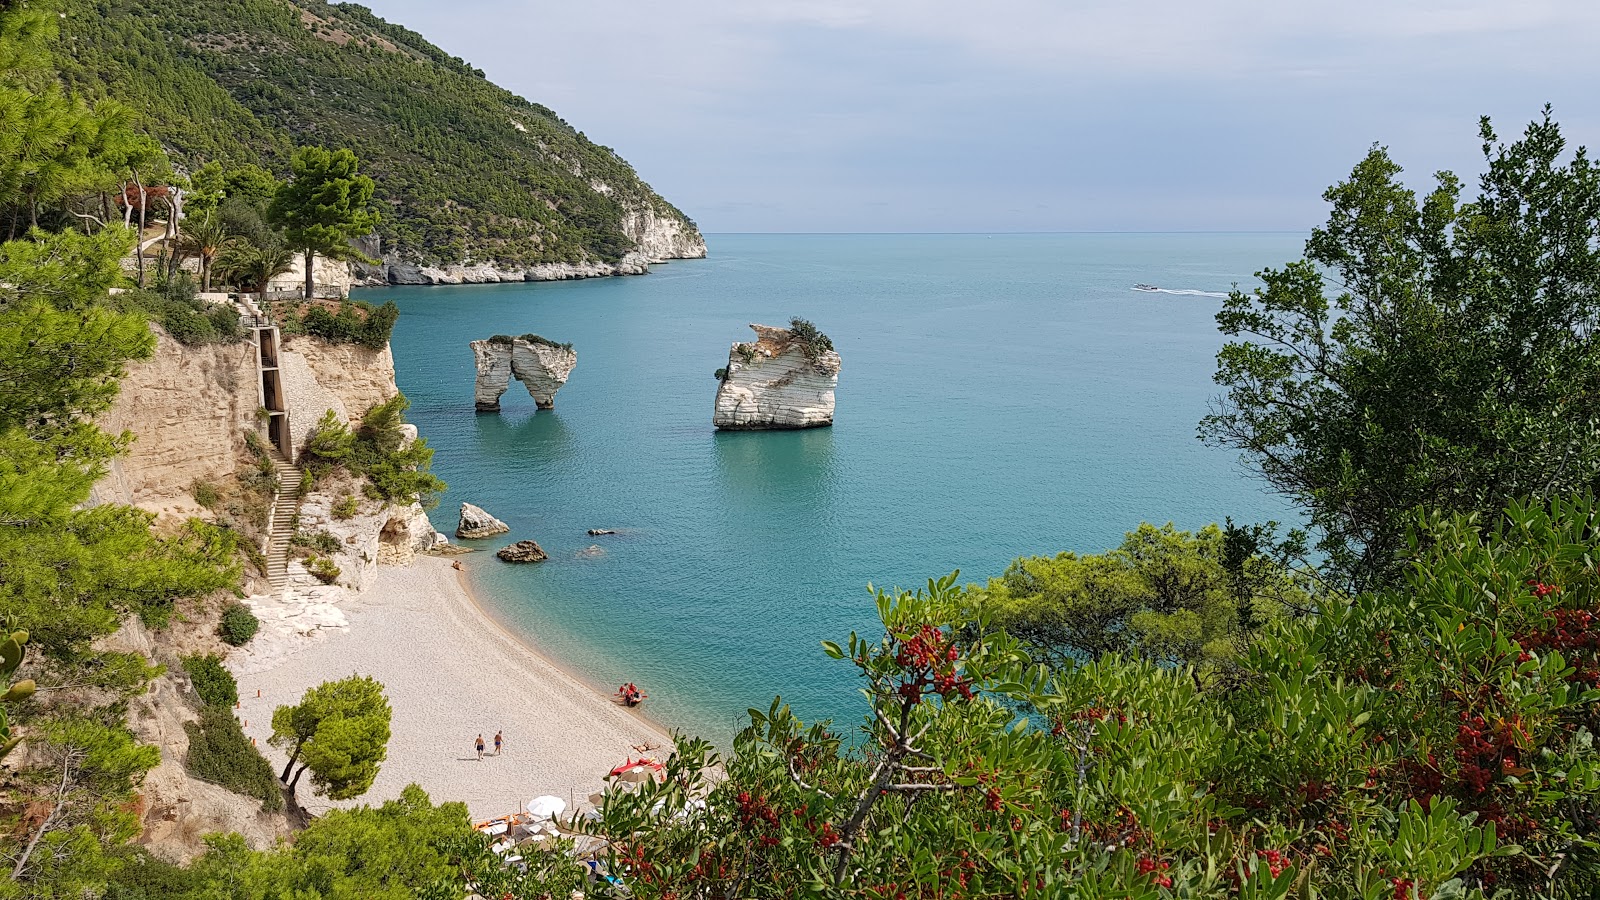 Baia dei Mergoli Plajı'in fotoğrafı hafif ince çakıl taş yüzey ile